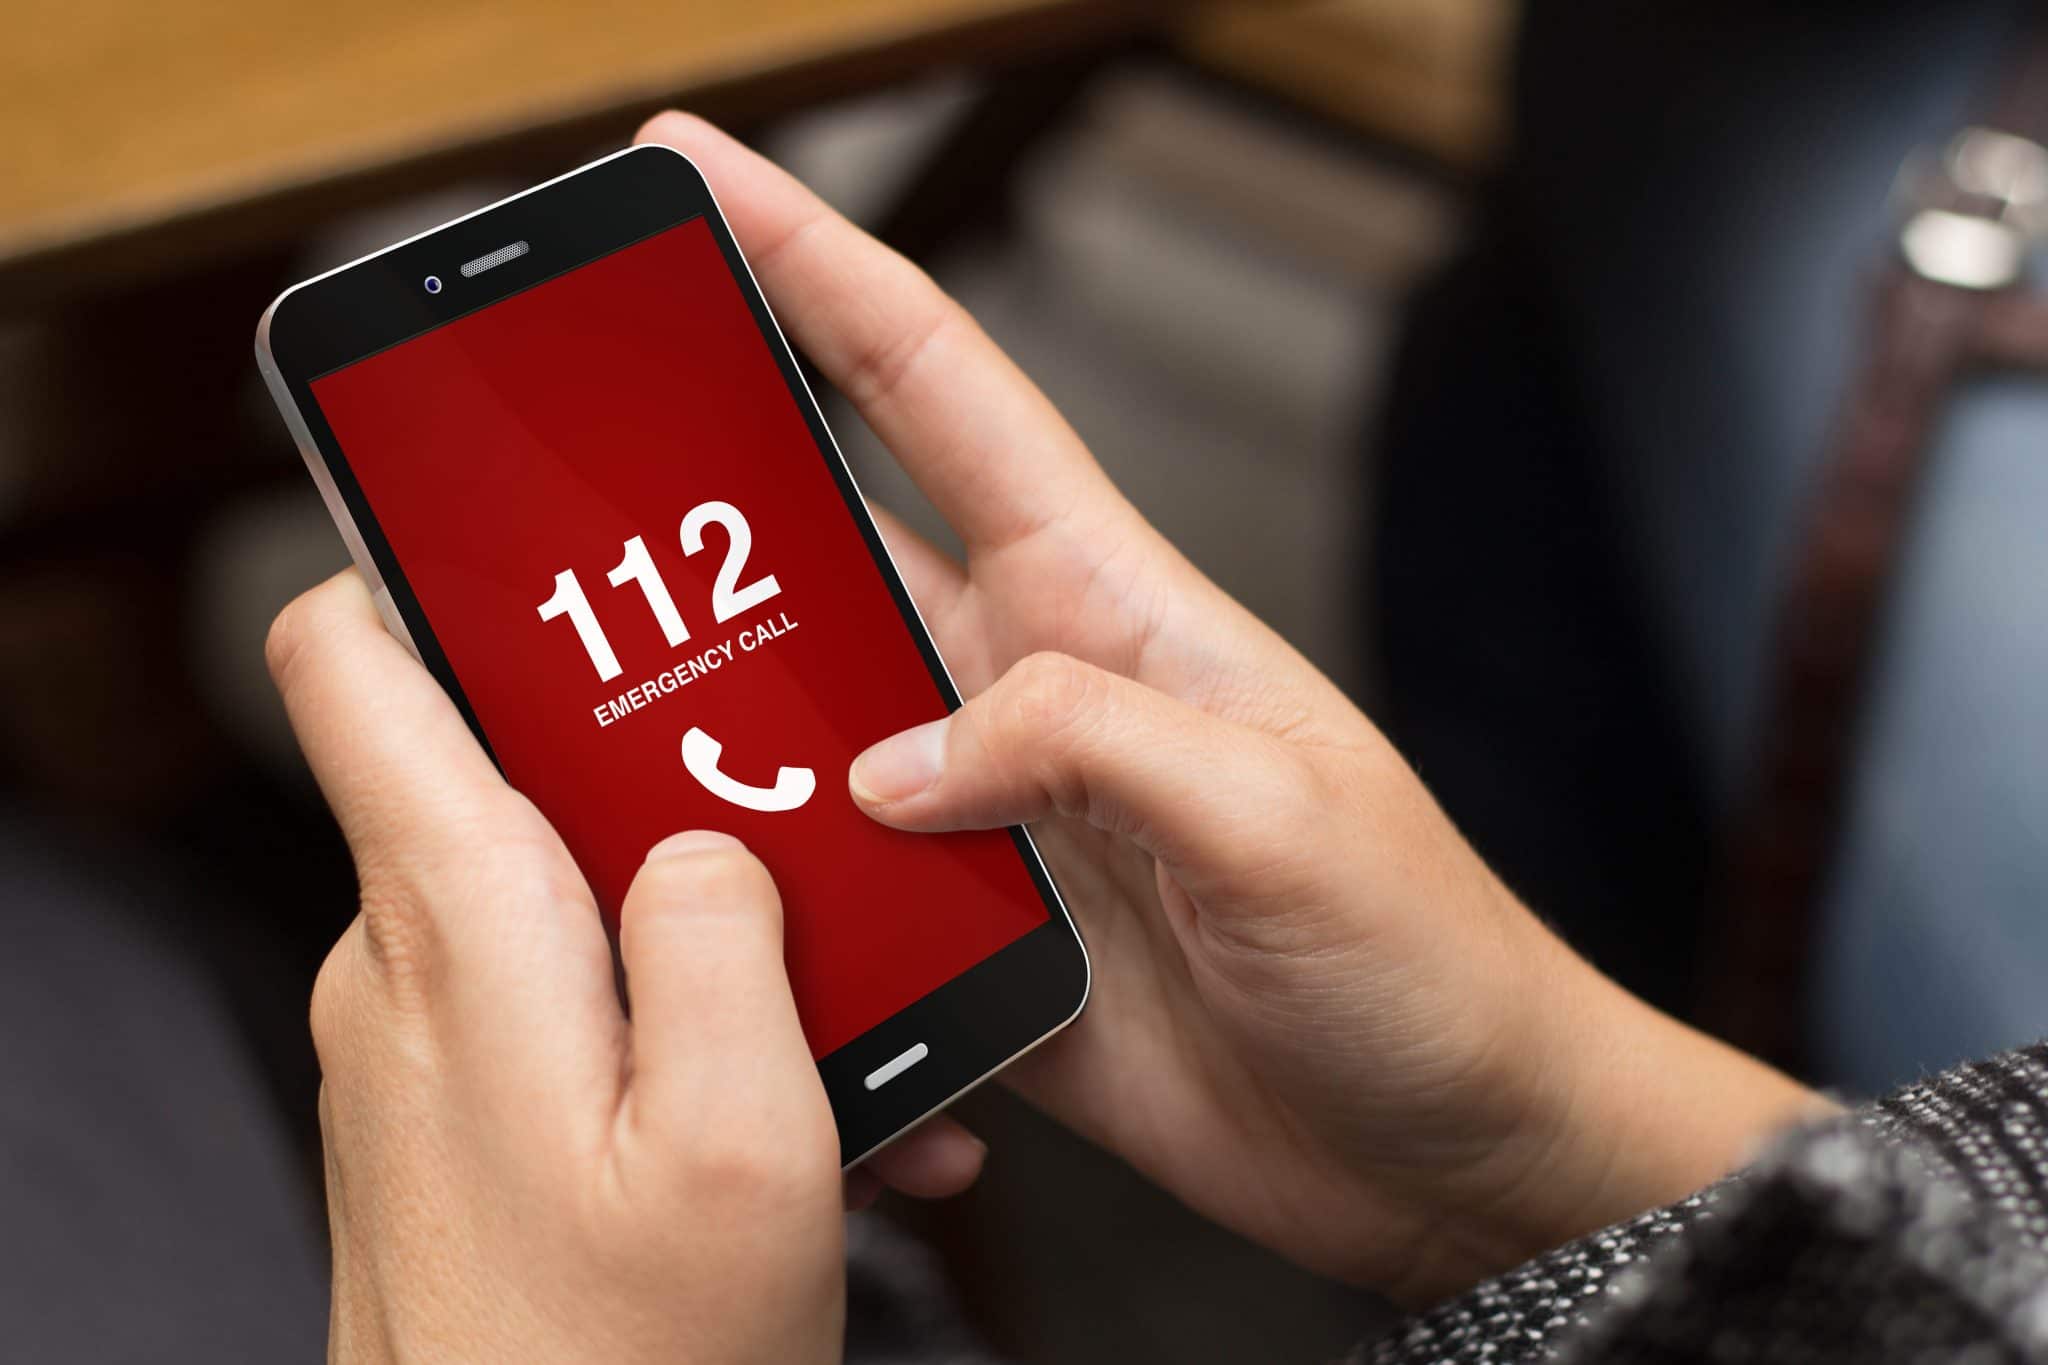 Une personne tient entre ses mains un smartphone affichant une liste de numéros d'urgence sur l'écran, dont le « 112 ».